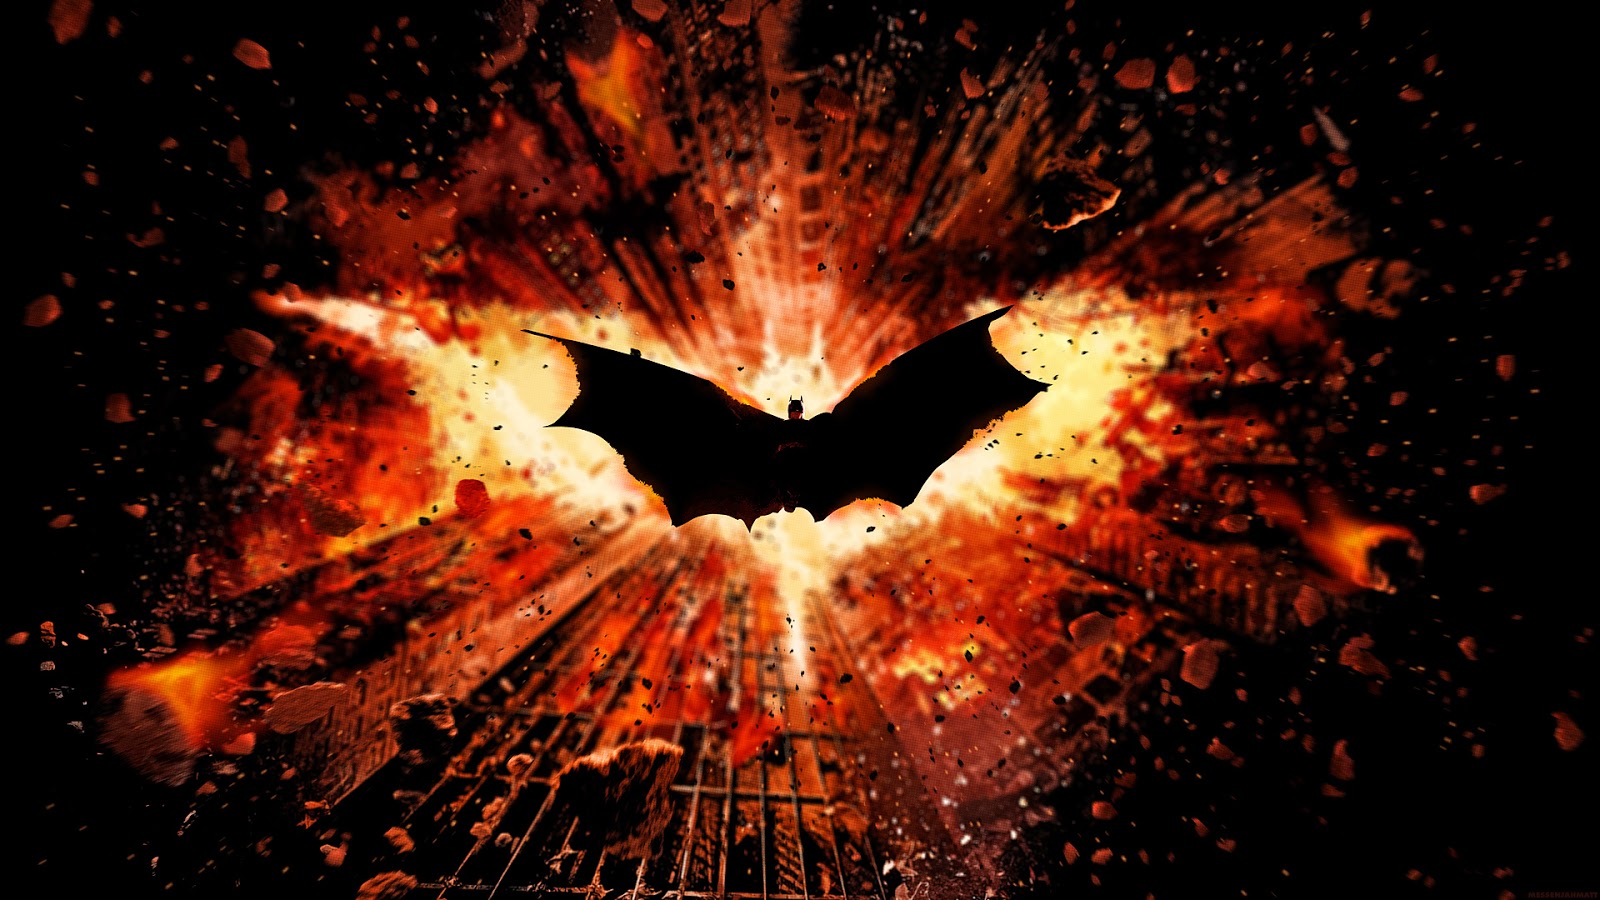  2K Batman Arkham Knight Wallpaper Wide Screen Wallpaper 1080p2K4K